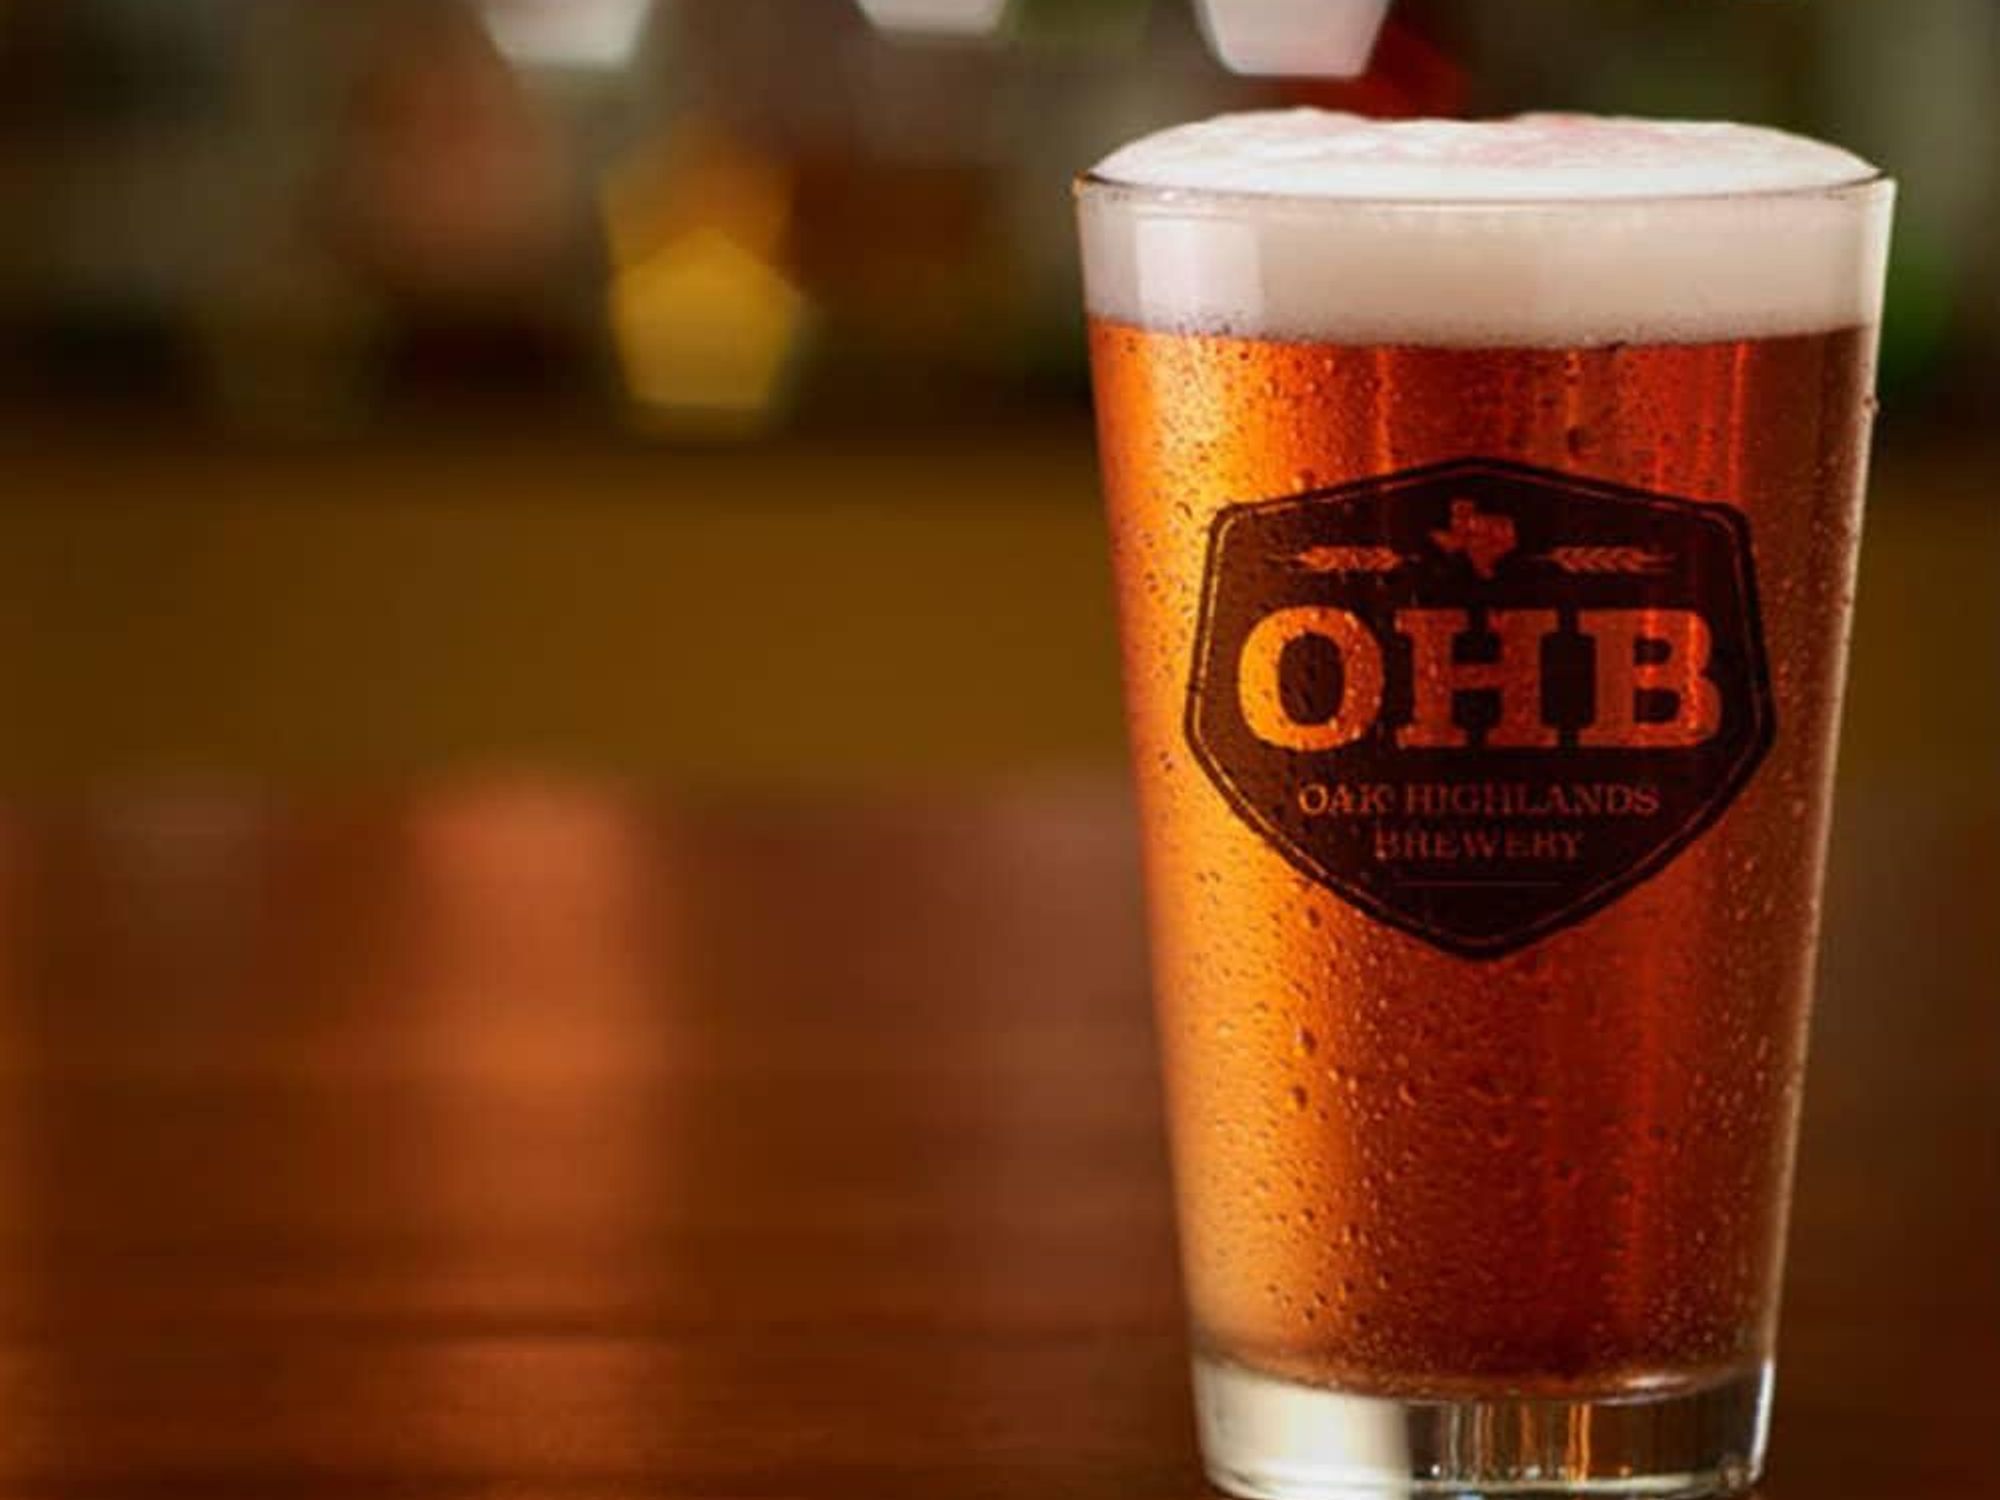 Oak Highlands Brewery